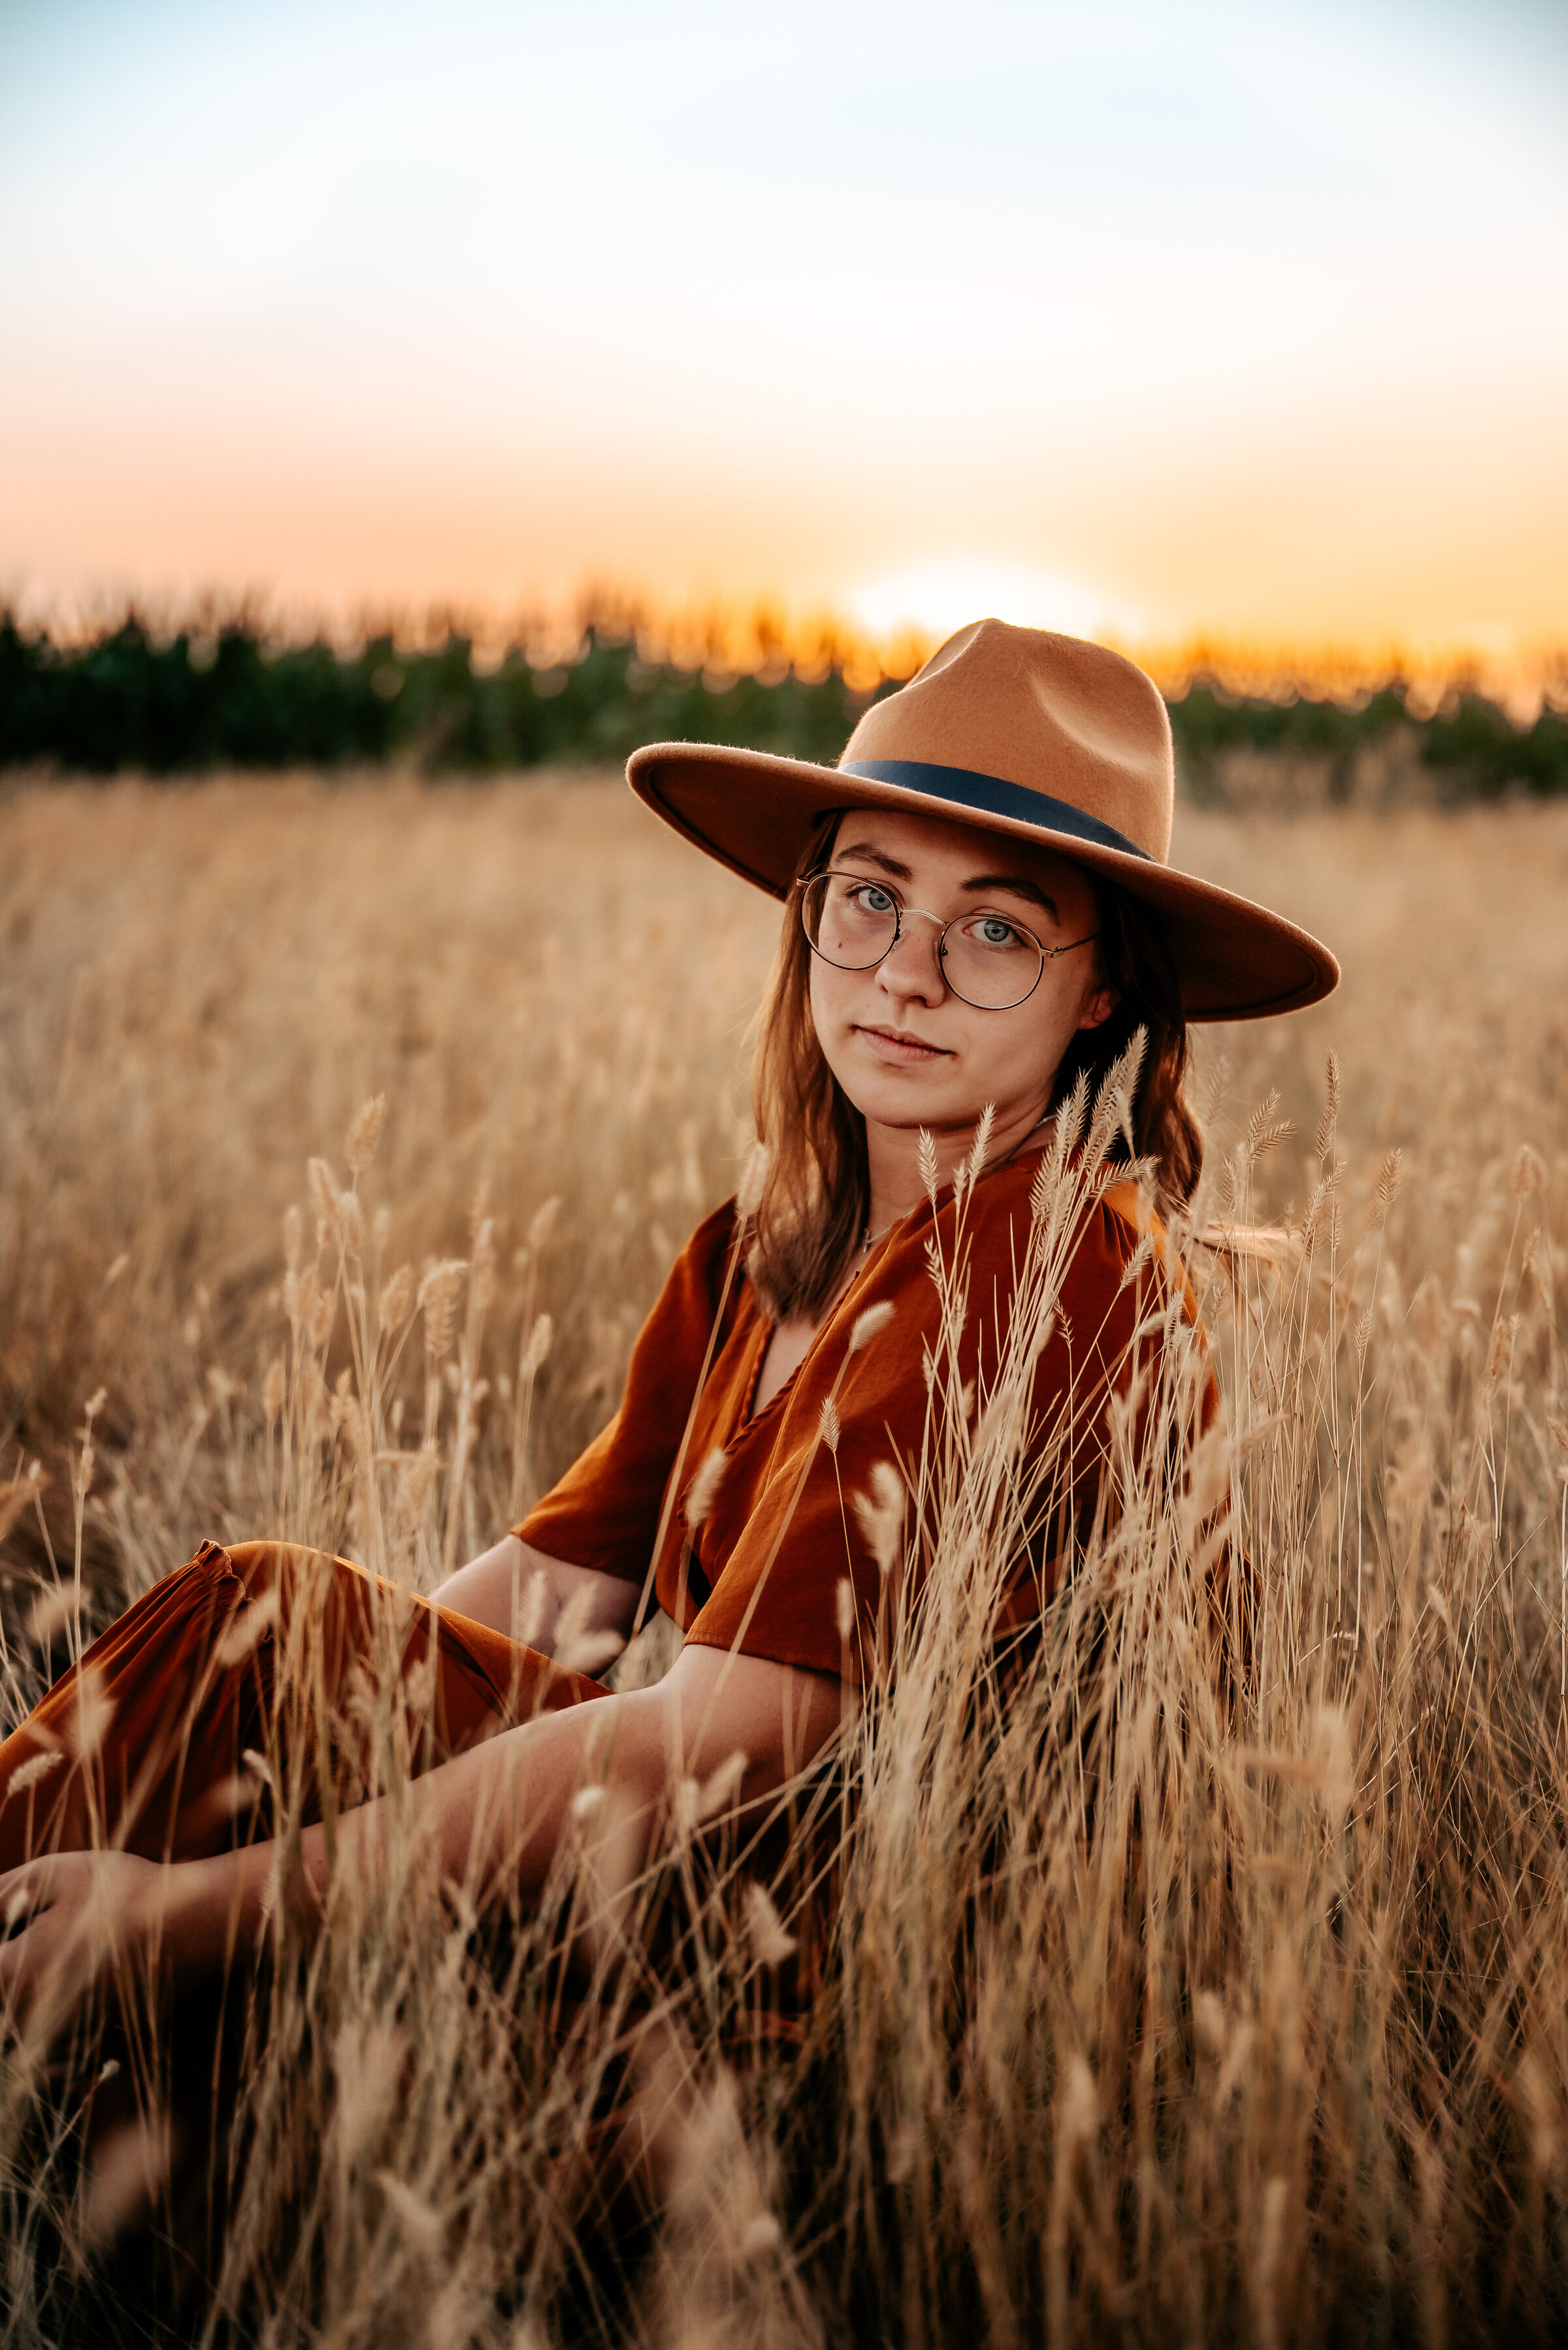 Girl sits in field in felt hat by corn field